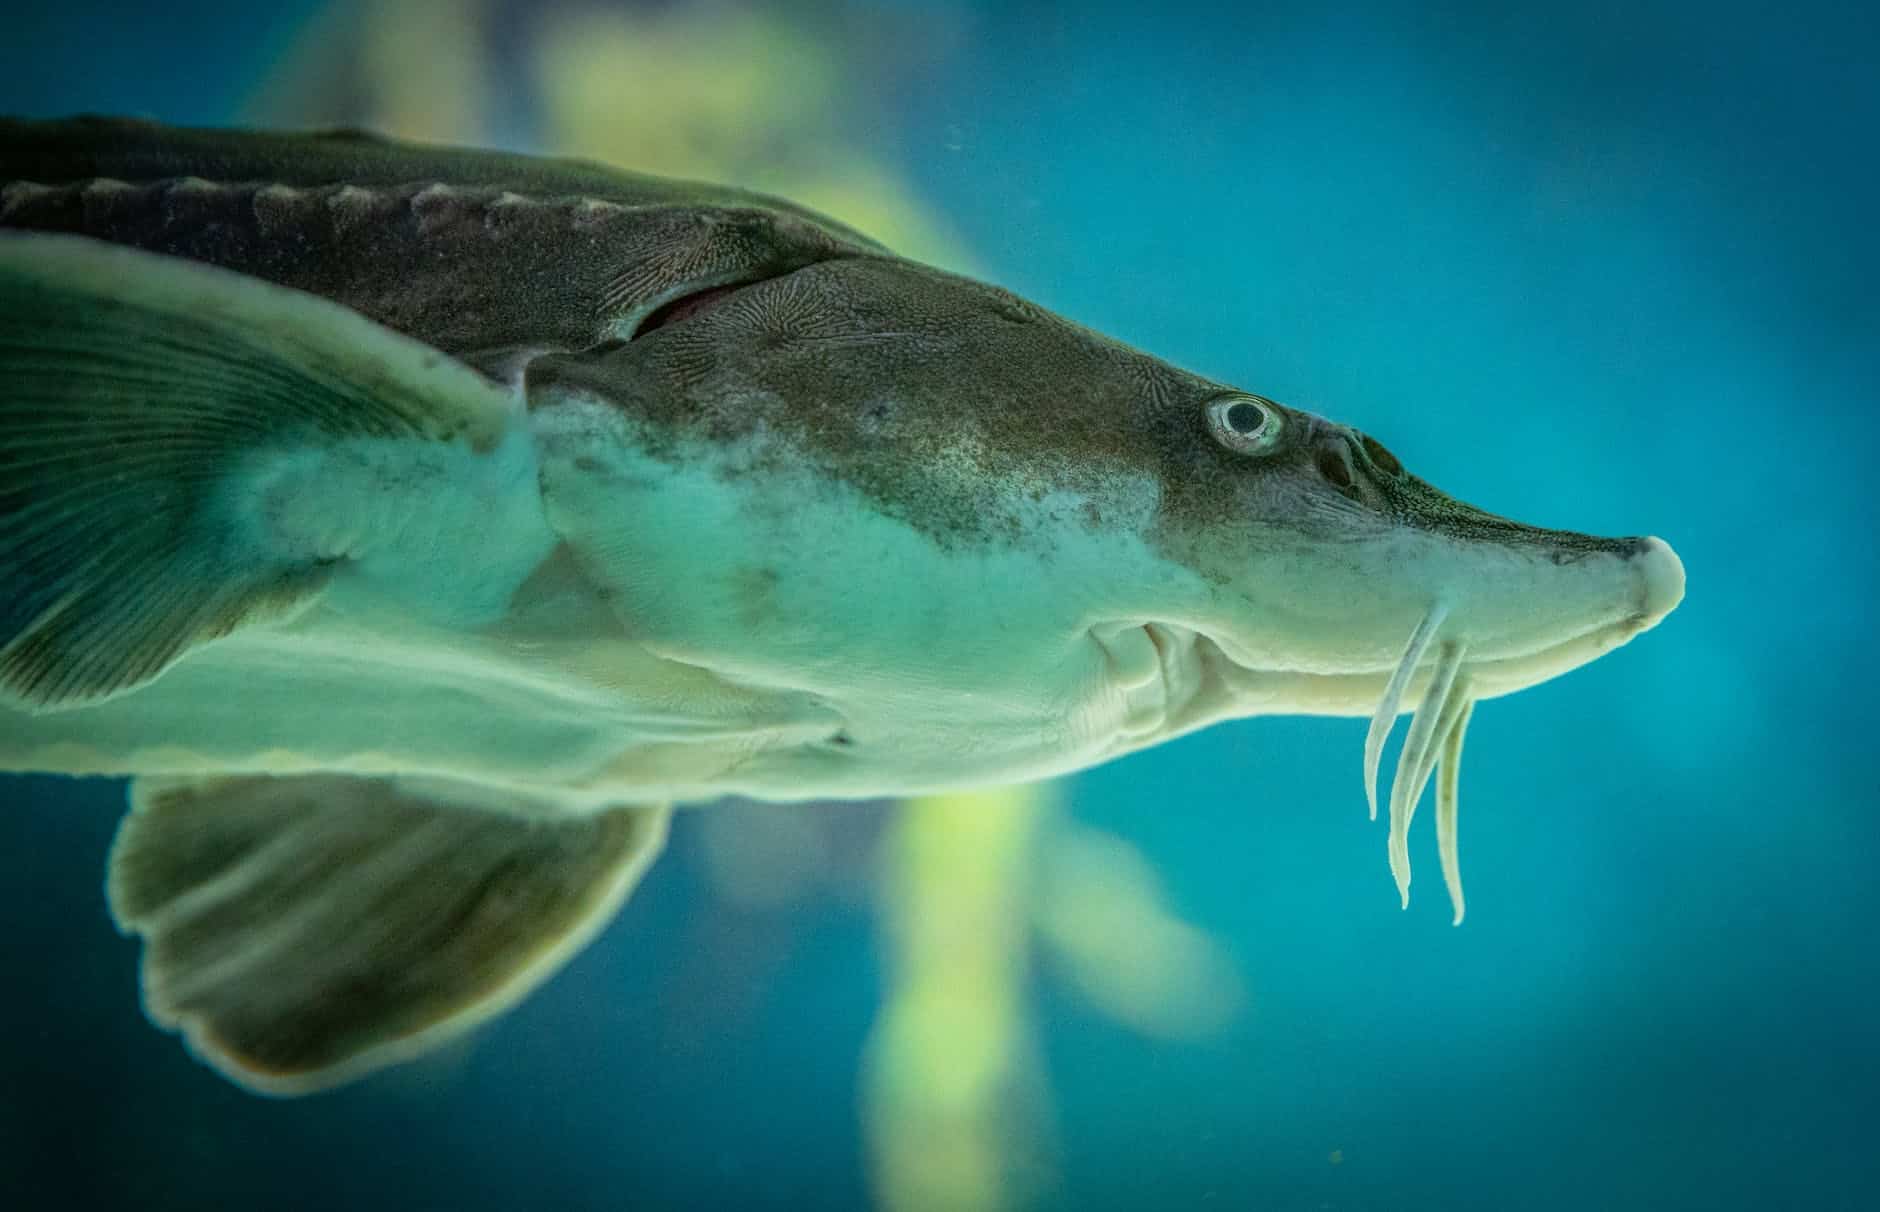 sturgeon fish swimming in aquarium